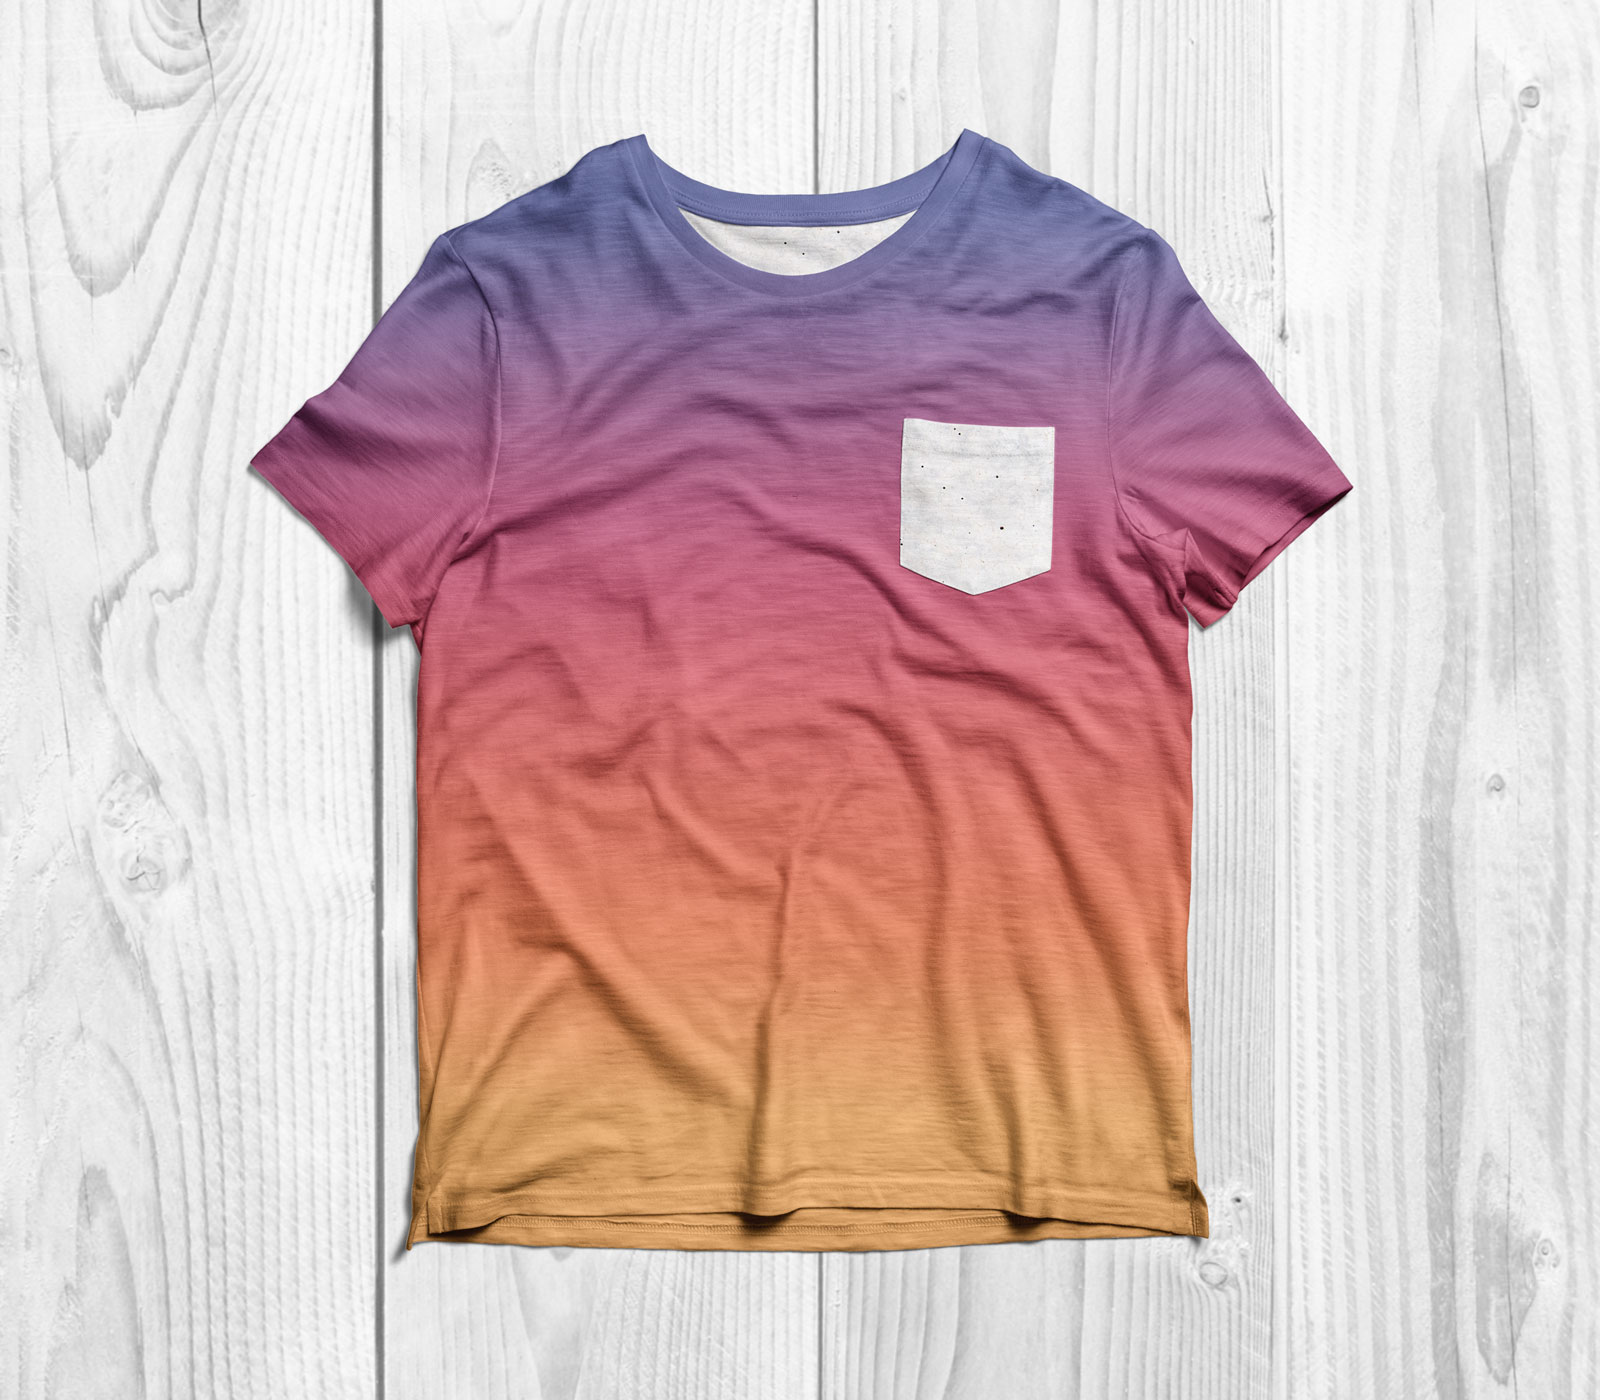 Free-Half-Sleeves-Pocket-T-Shirt-Mockup-PSD